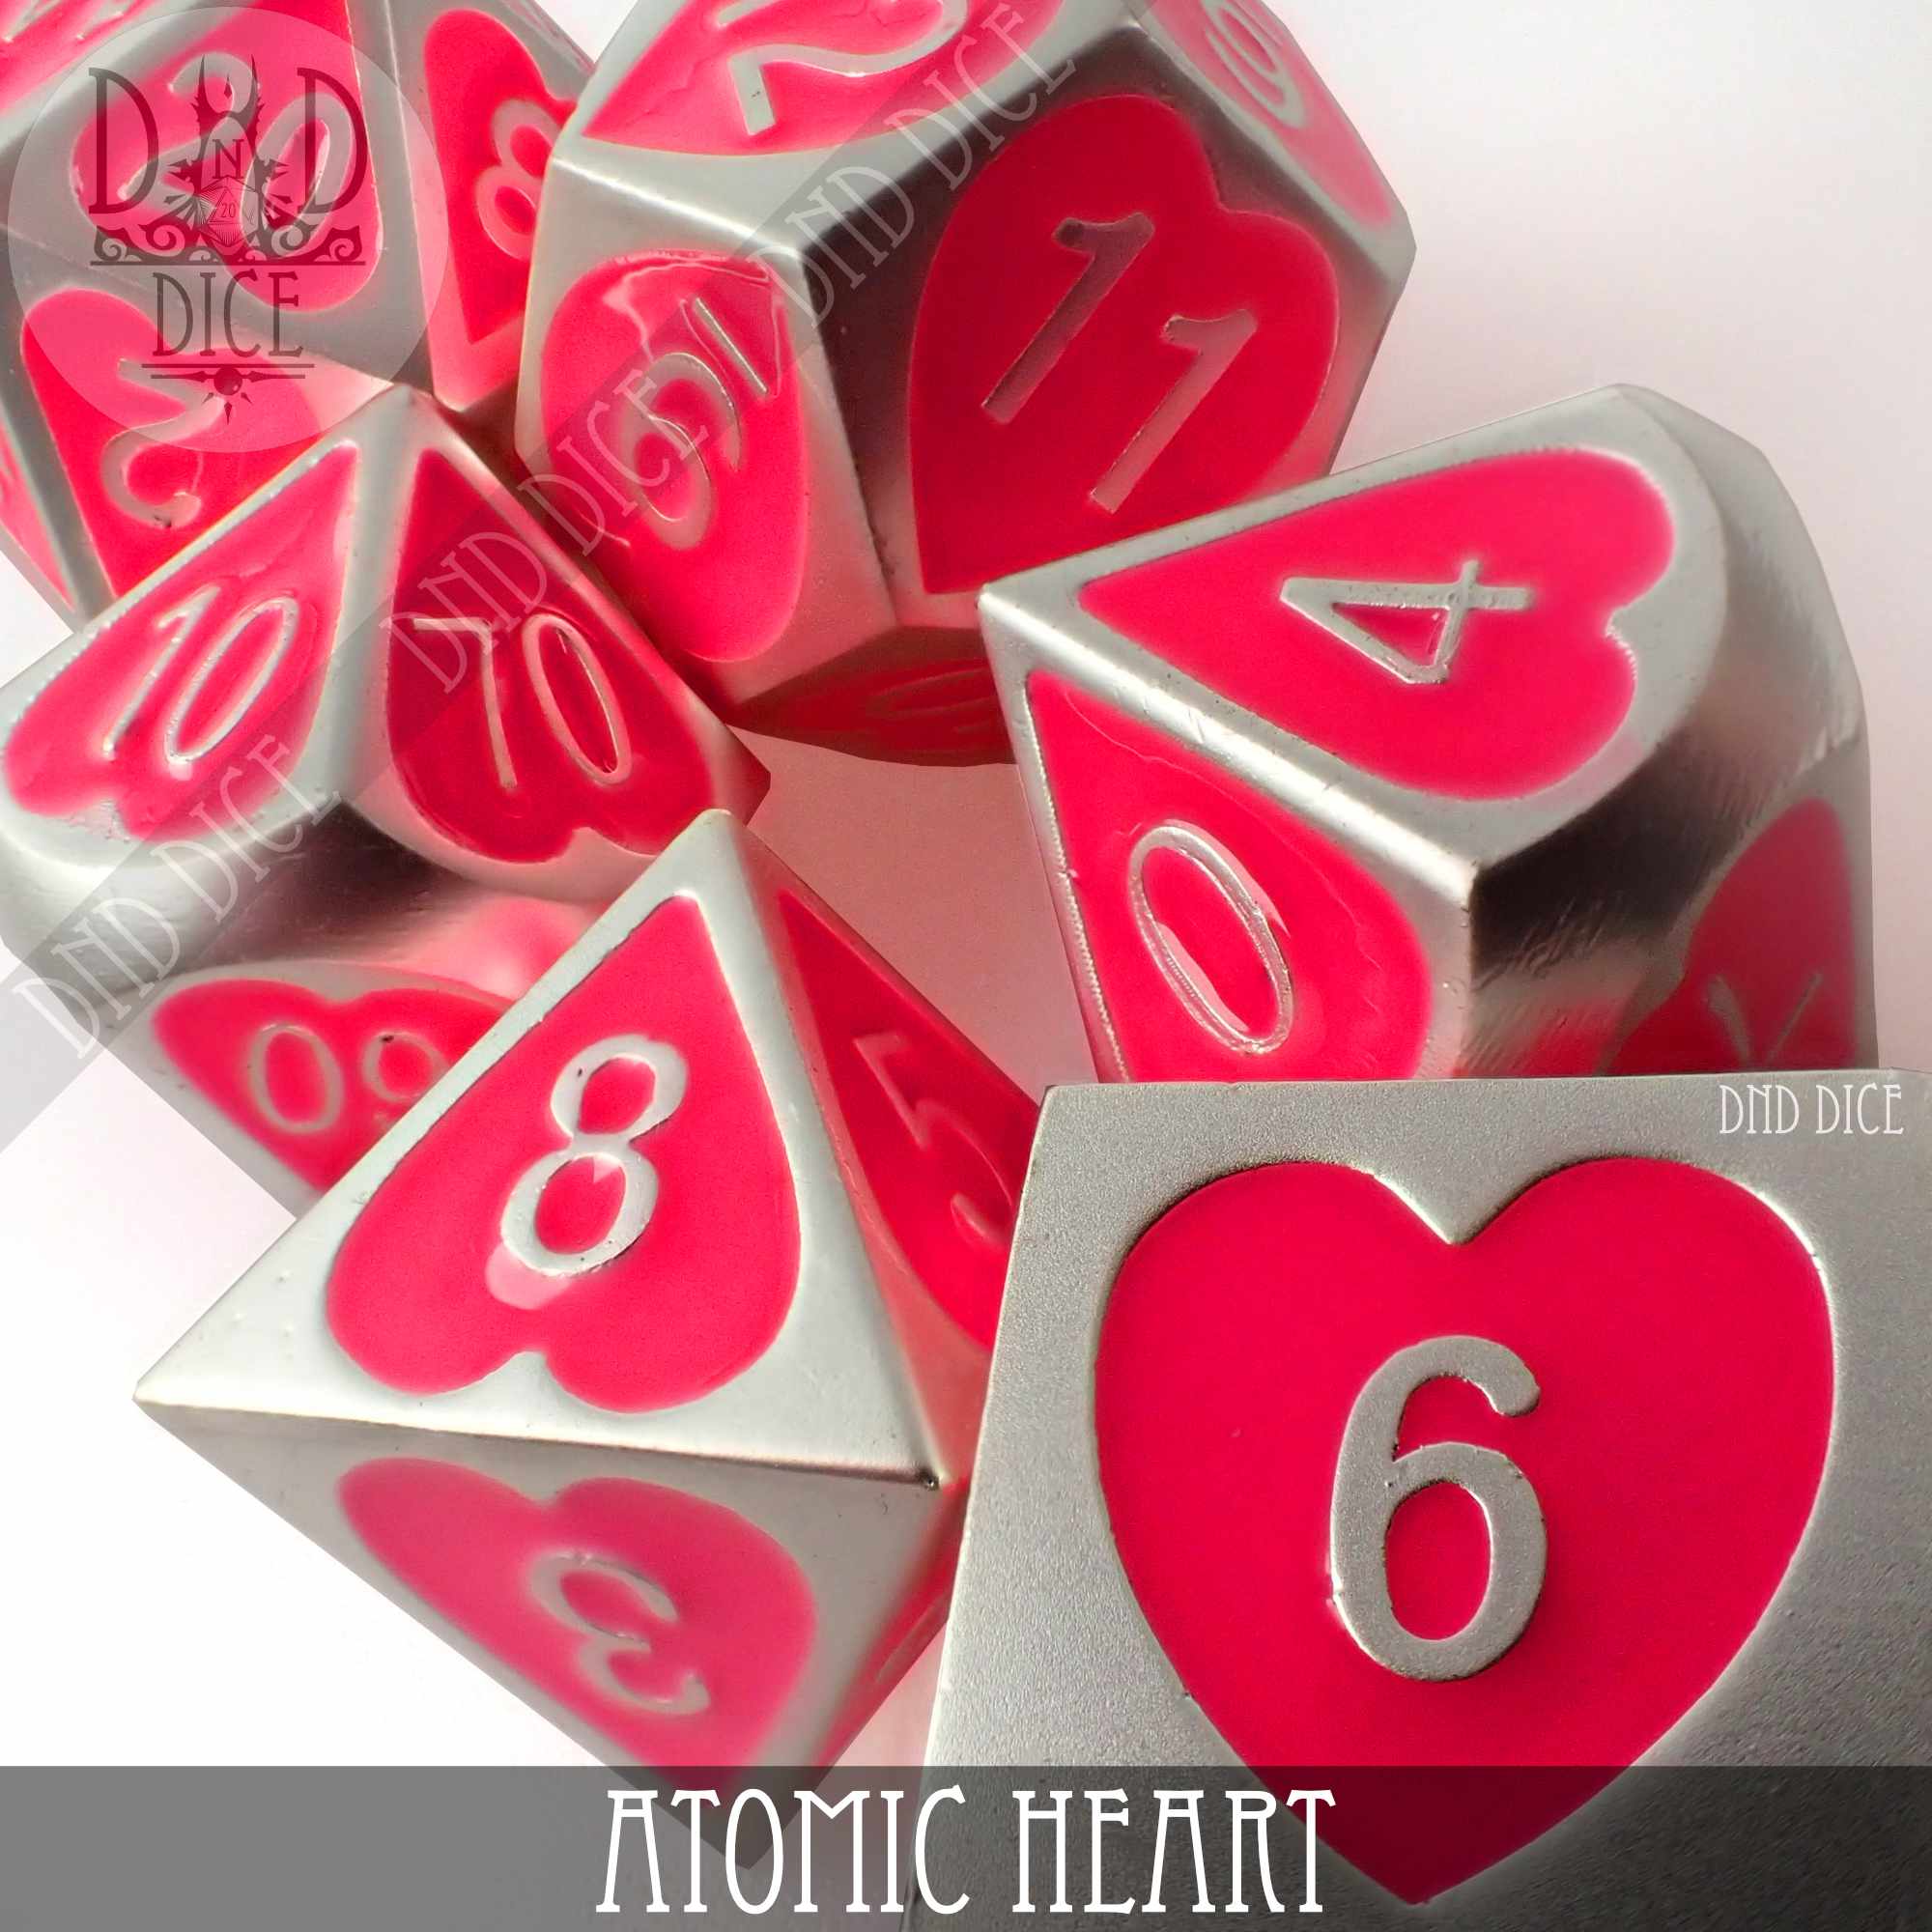 Atomic Heart (Metal)